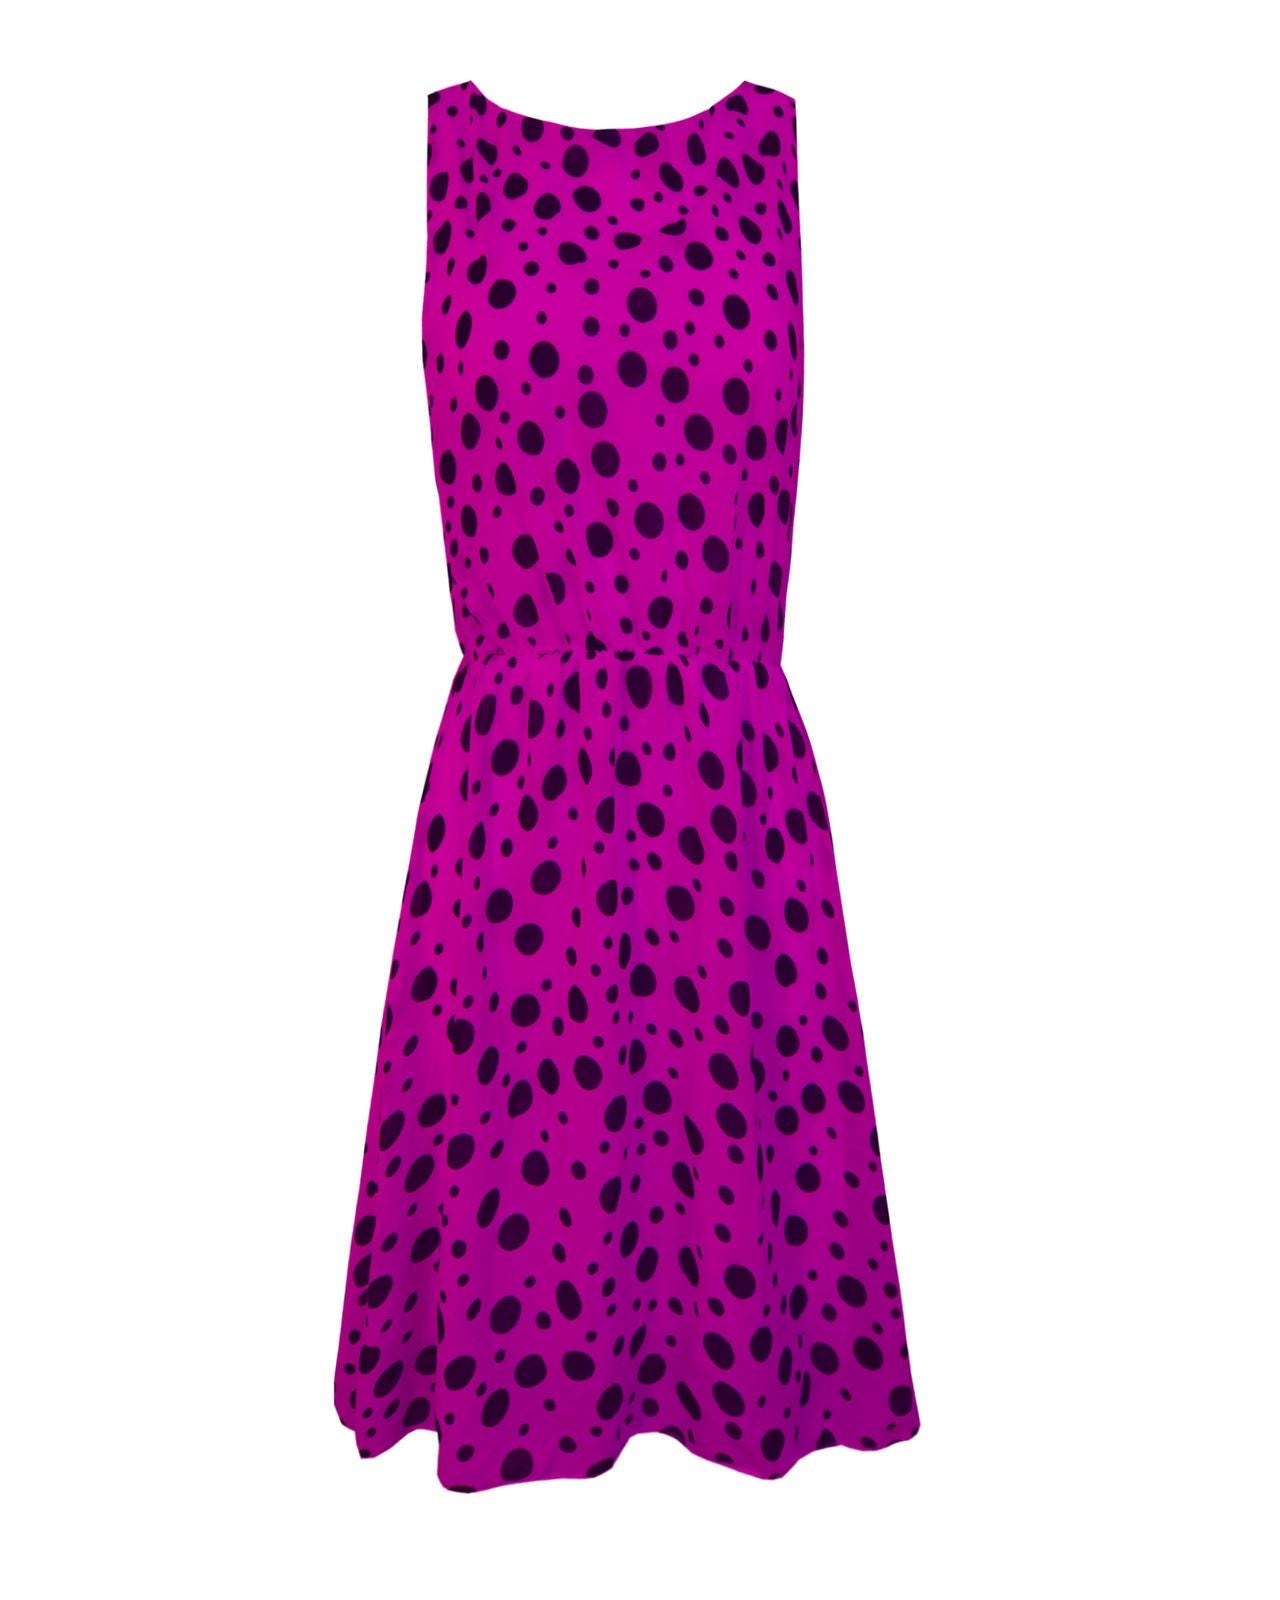 New Ladies Women Sleeveless Polka Dot Detail Swing Skater Short Dress Top 8-12